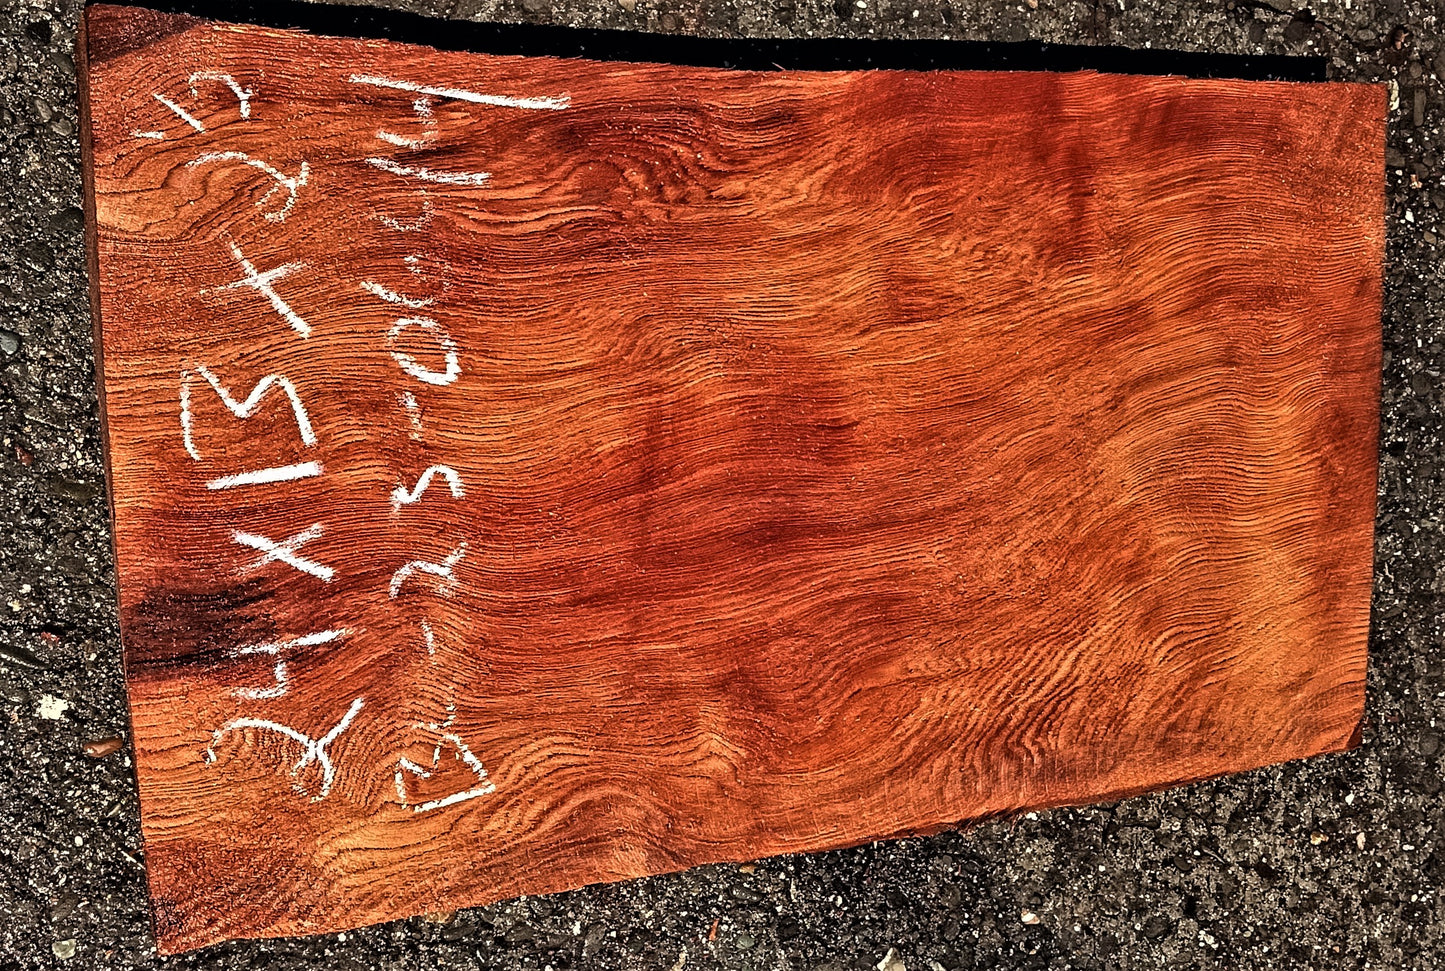 redwood | bowl turning | wood turning | DIY crafts | guitar | bl23-0644